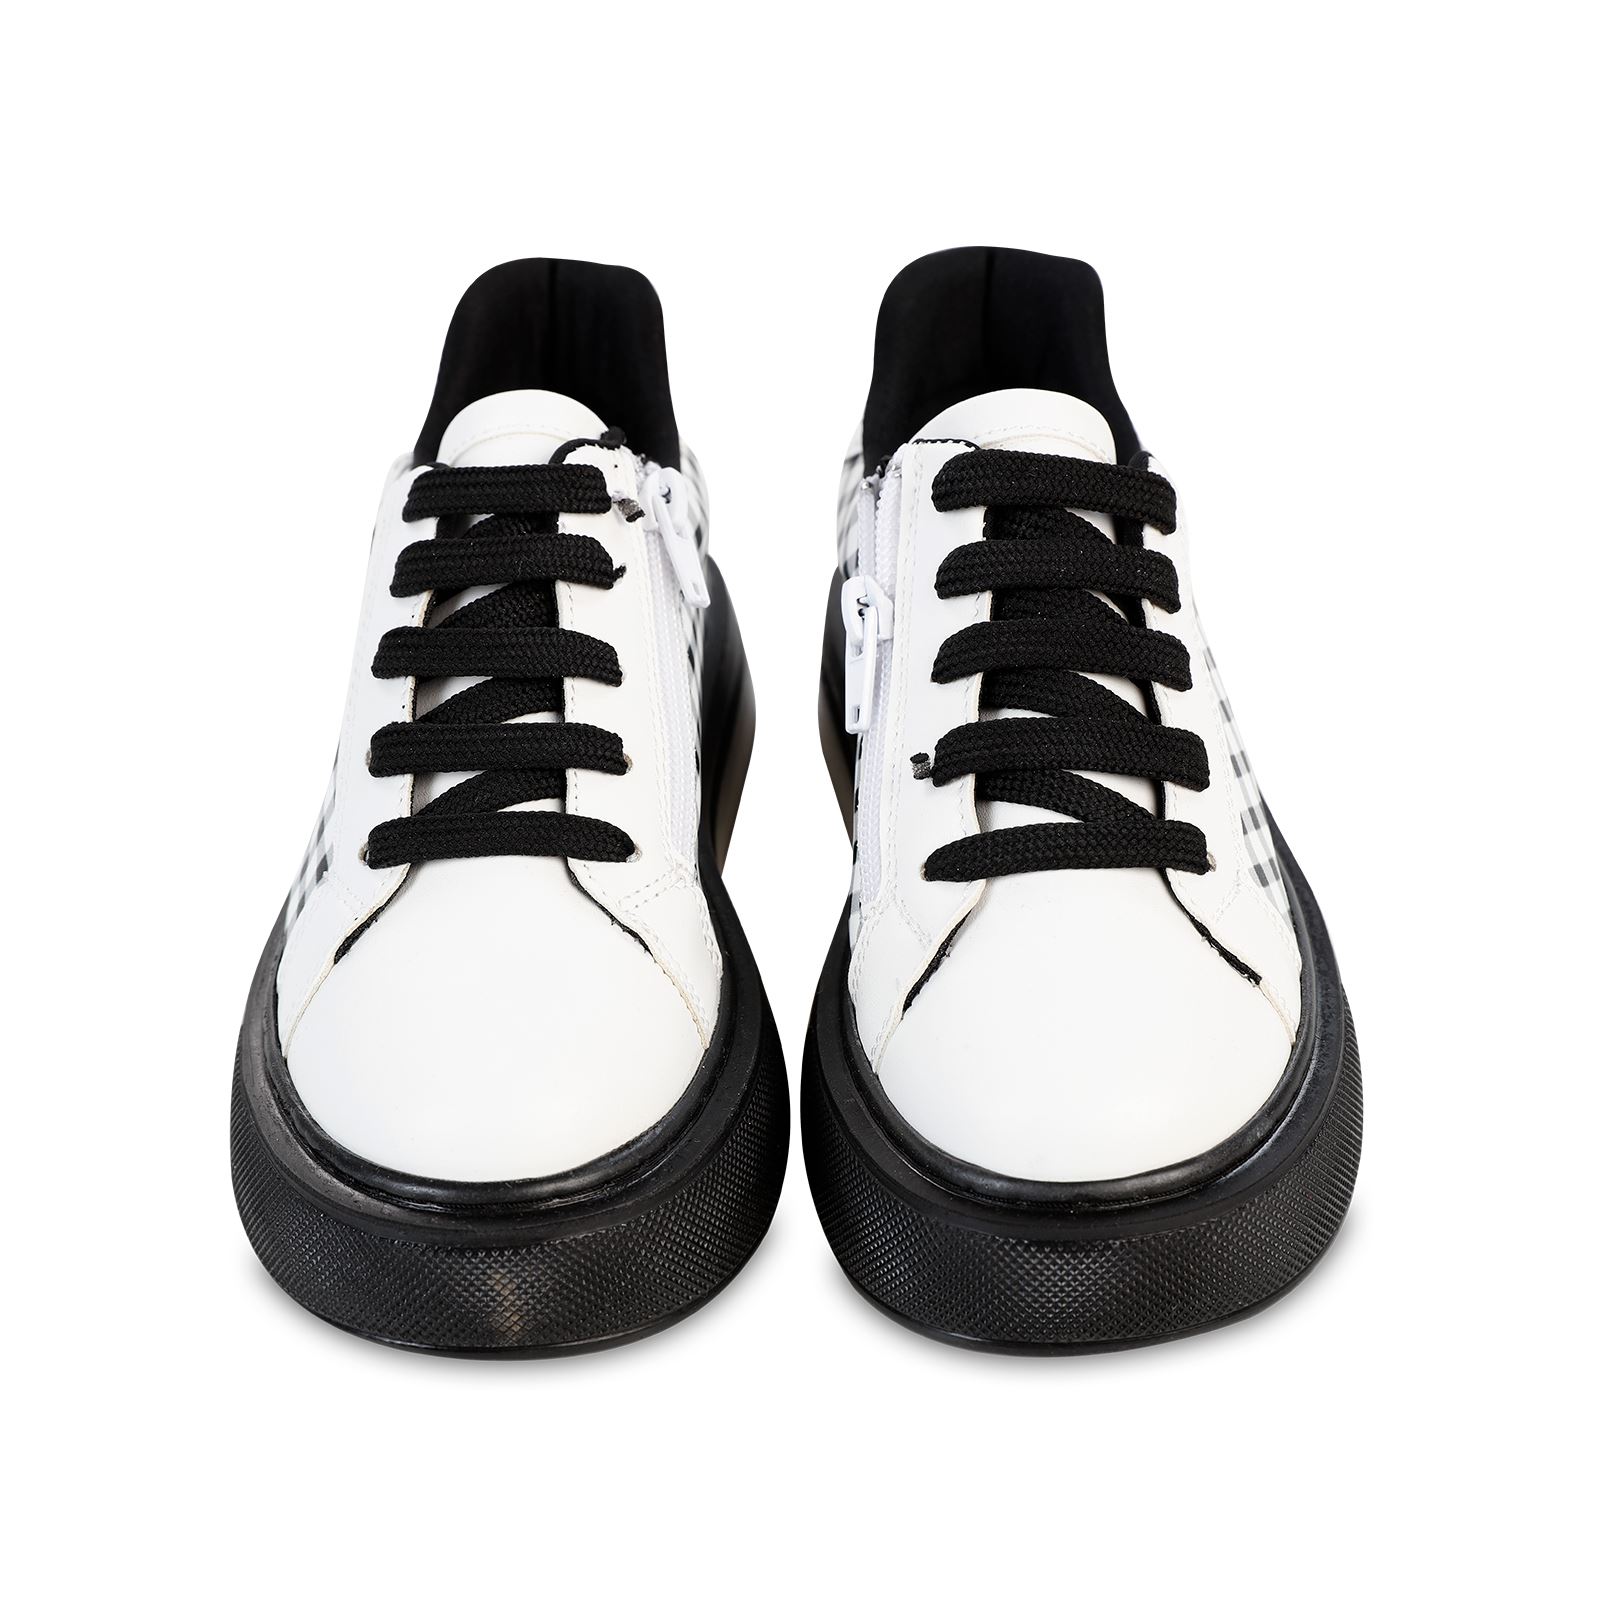 Civil Kız Çocuk Spor Ayakkabı 31-35 Numara Siyah-Beyaz